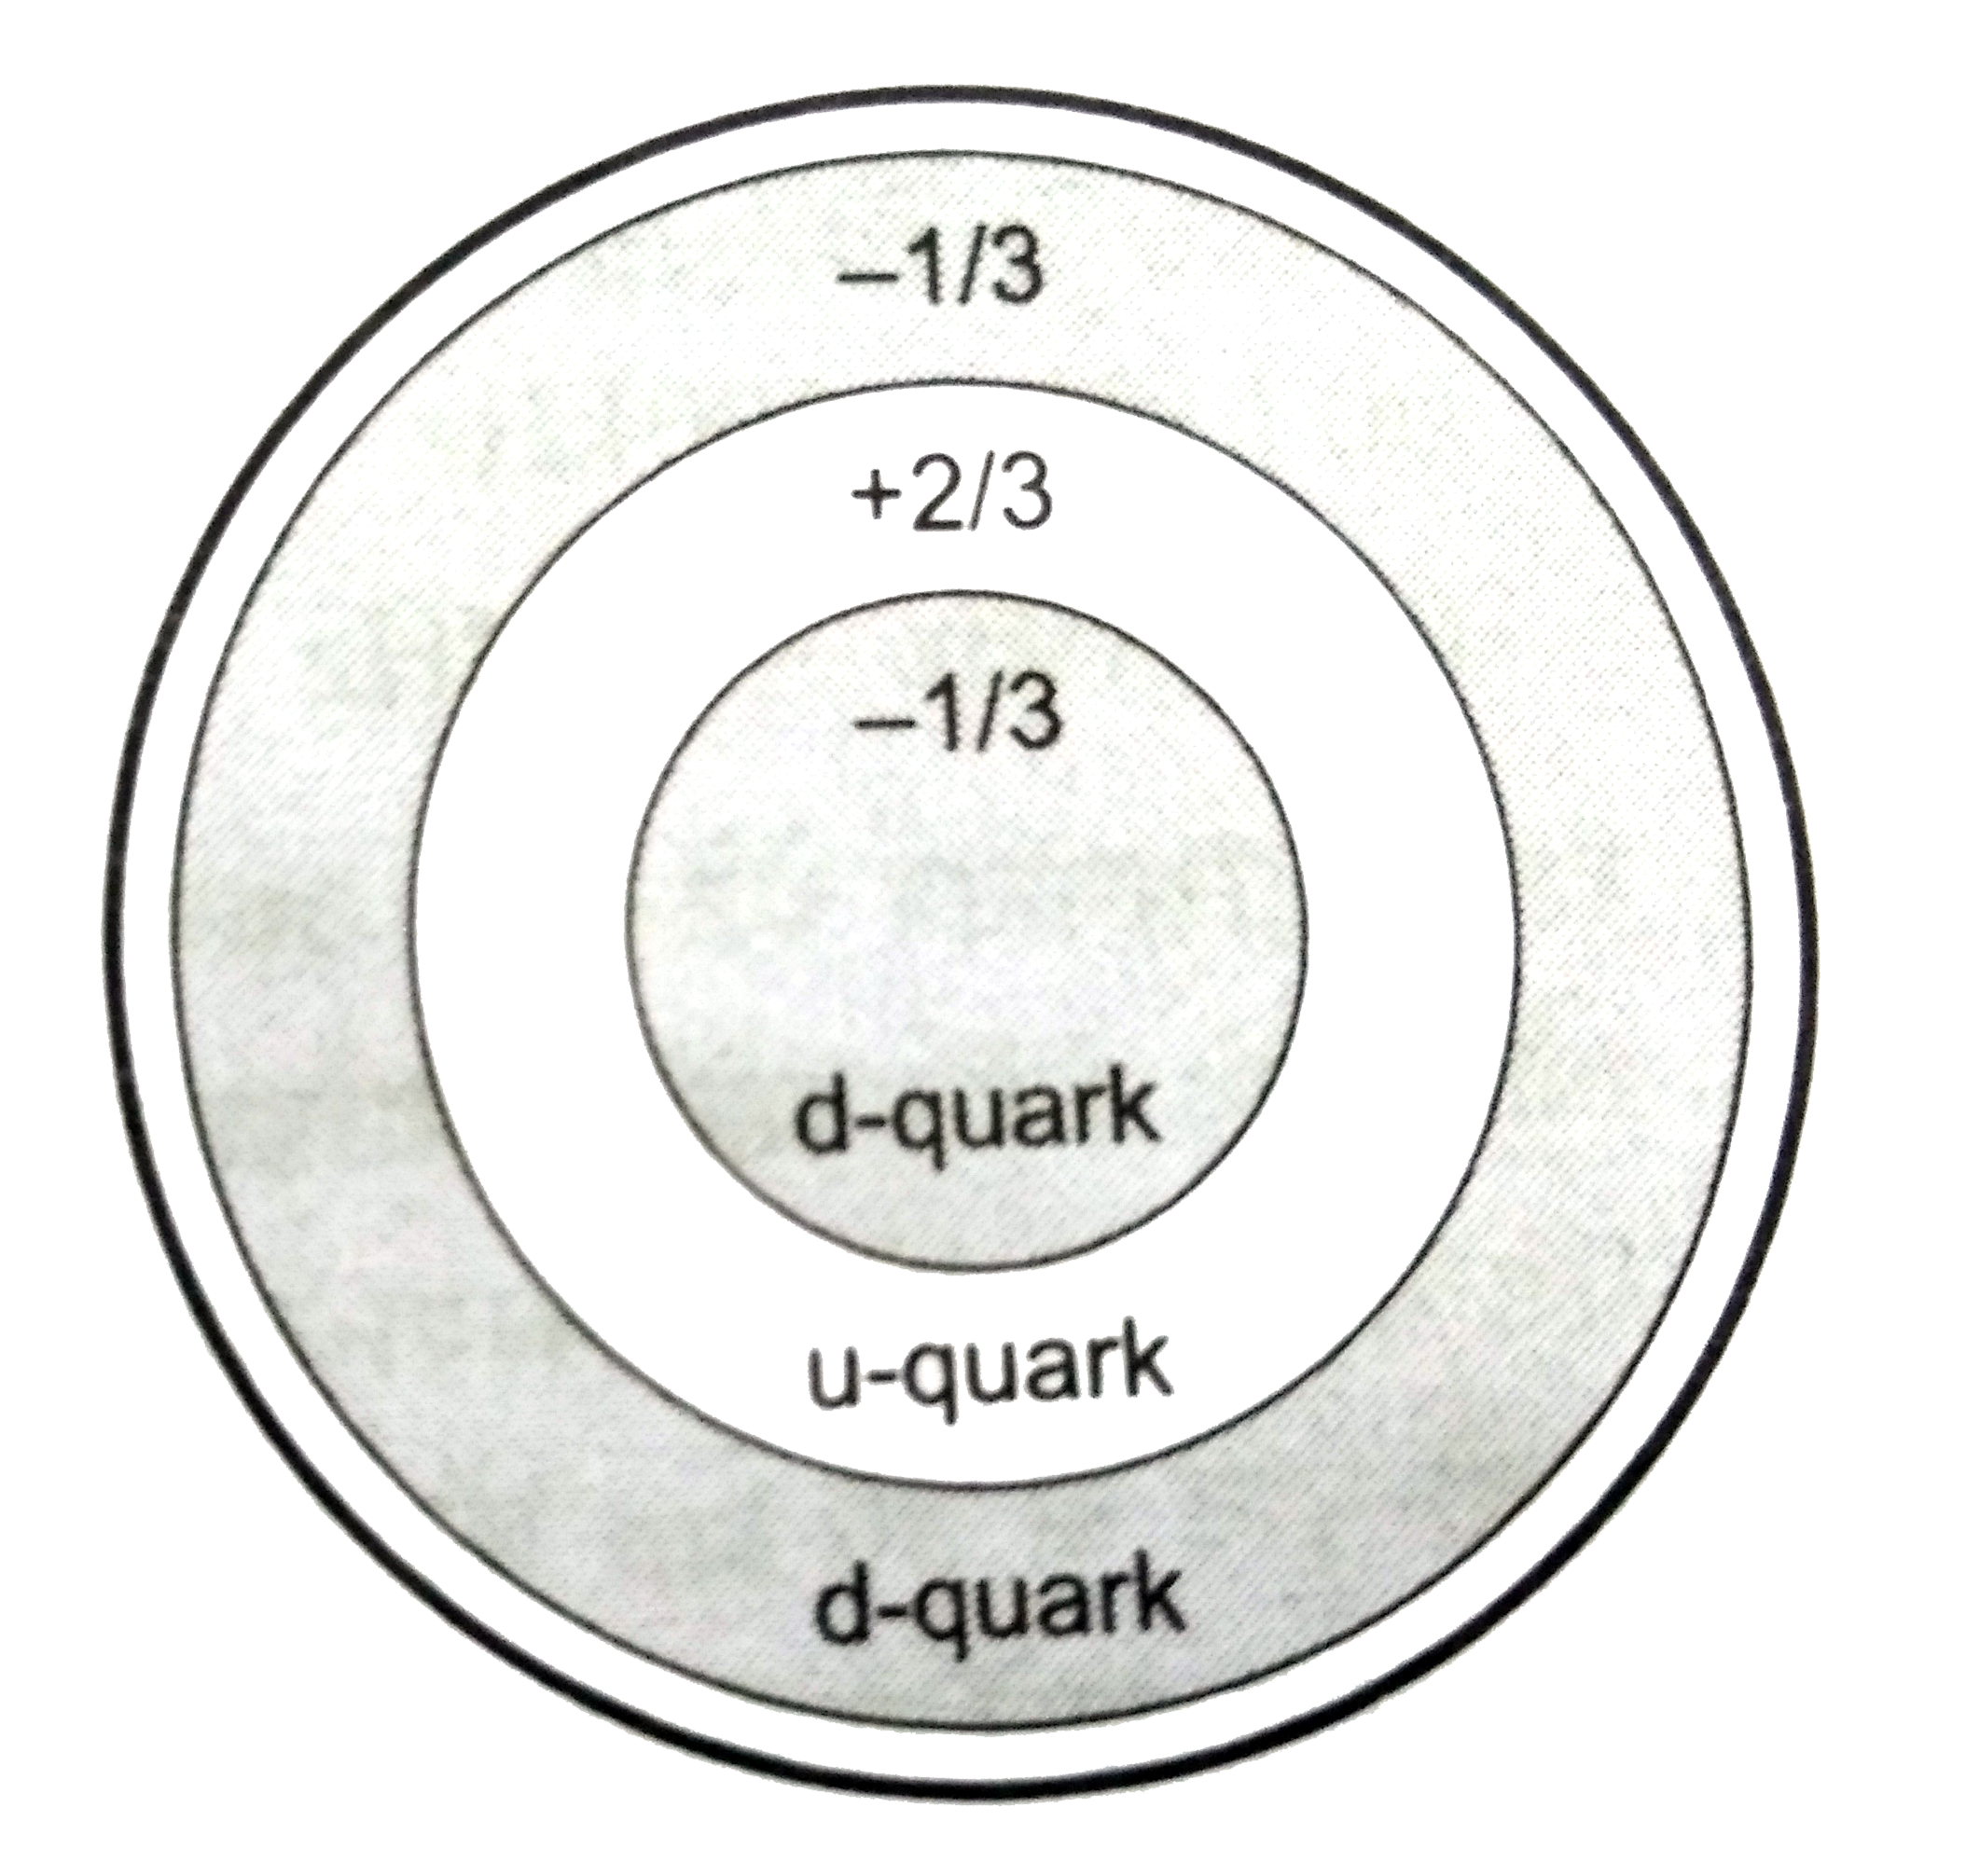 न्यूट्रॉन एक अनावेशित परंतु 9.66xx10^(-27) Am^(2)  का z - अक्षीय चुंबकीय आघूर्ण (magnetic moment)  रखनेवाला कण हैं । इसे न्यूट्रॉन के आंतरिक बनावट से समझा जा  सकता हैं । प्रायोगिक सत्यापन से यह ज्ञात हुआ हैं कि एक न्यूट्रॉन तीन मूलभूत क्वार्क एक +(2)/(3)e आवेश के अप - क्वार्क (u) तथा दो  - (1)/(3) e आवेश के डाउन - क्वार्क (d) से मिलकर बना हैं । तीनों क्वार्कों का युग्म इसे अनावेशित बनाता हैं । यदि ये क्वार्क गित में हो , तो एक चुंबकीय आघूर्ण उत्पन्न करते हैं । इस साधारण संरचना में यदि यह माना जाए कि u - क्वार्क घड़ी की दिशा की विपरीत दिशा में जबकि d - क्वार्क घड़ी की दिशा से r त्रिज्या वाले वृत्तीय पथ पर एक समरुप चाल v से चलते हैं , तो निम्नलिखित प्रश्नों के उत्तर दें ।    अगर सभी क्वार्क एक ही दिशा में घूमने लगे , तो न्यूट्रॉन का चुंबकीय आघूर्ण होगा